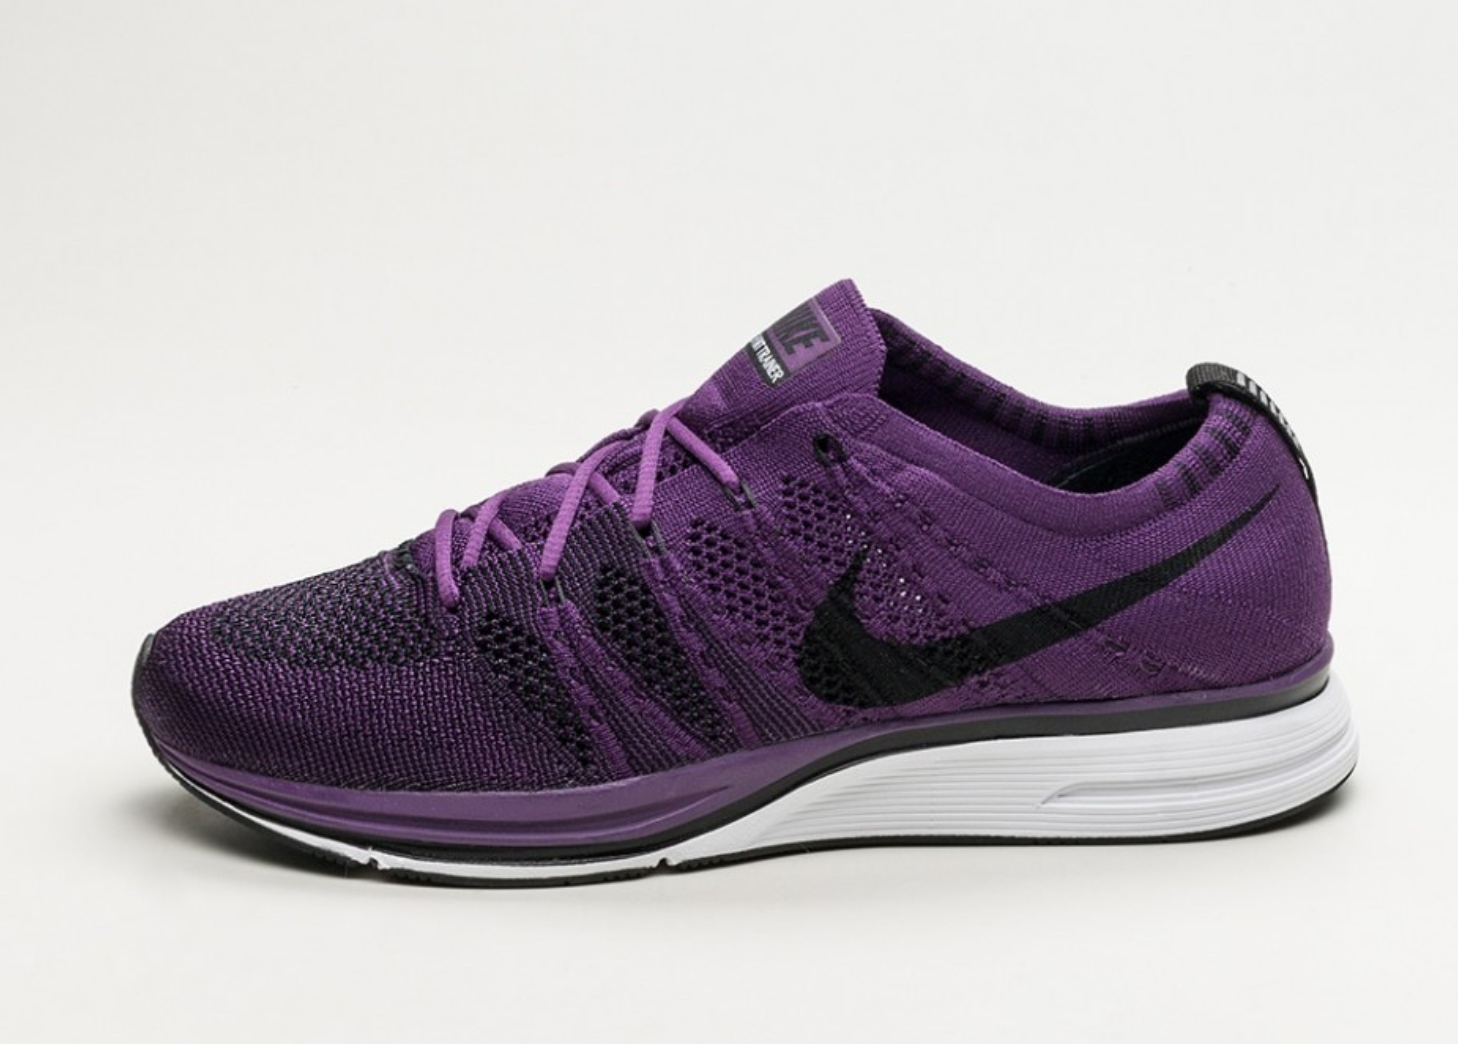 Night Purple' Nike Flyknit Trainer Gets 